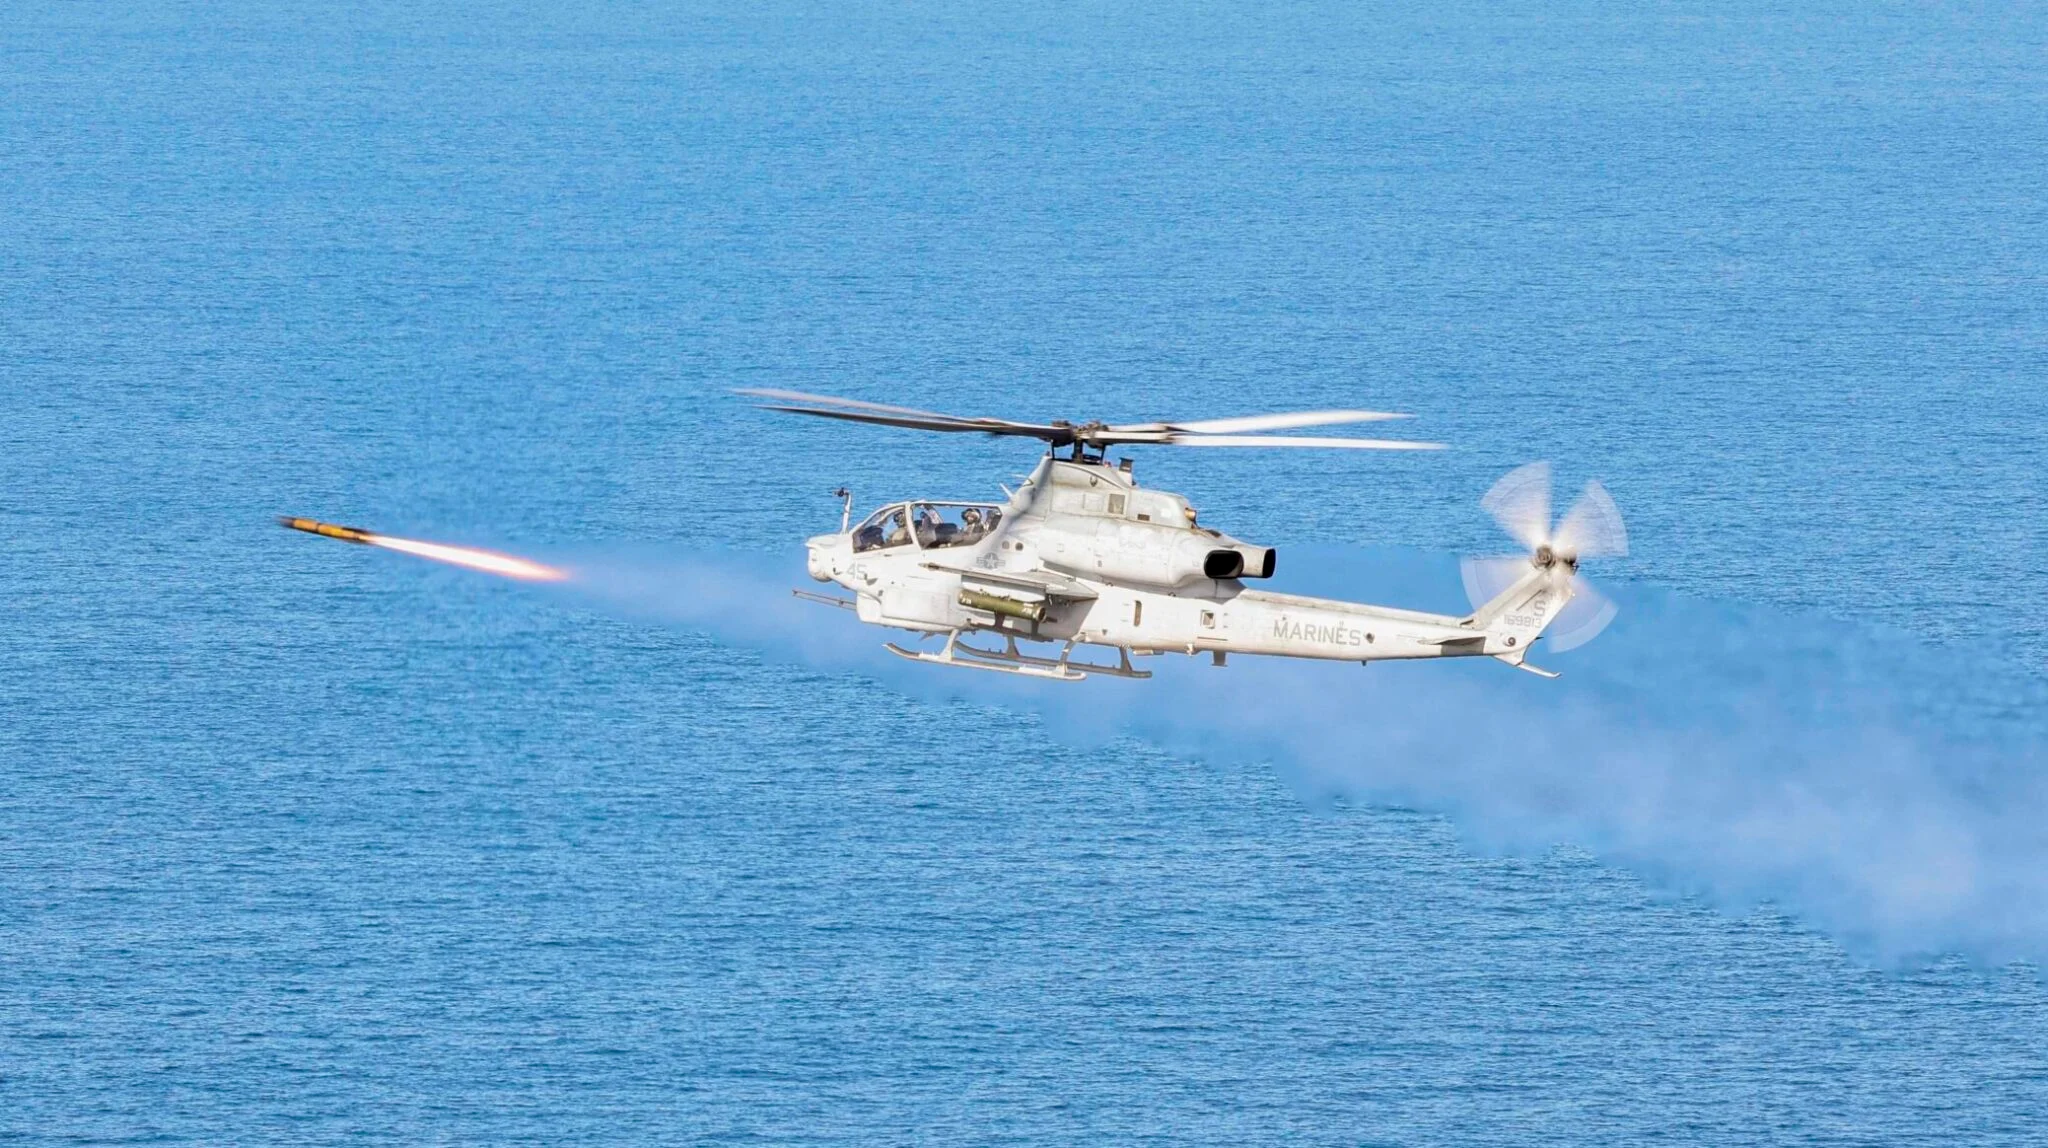 De VS heeft de verkoop van 3.000 AGM-179A JAGM raketten voor AH-64E Apache helikopters aan het VK goedgekeurd voor een bedrag van bijna 1 miljard dollar.